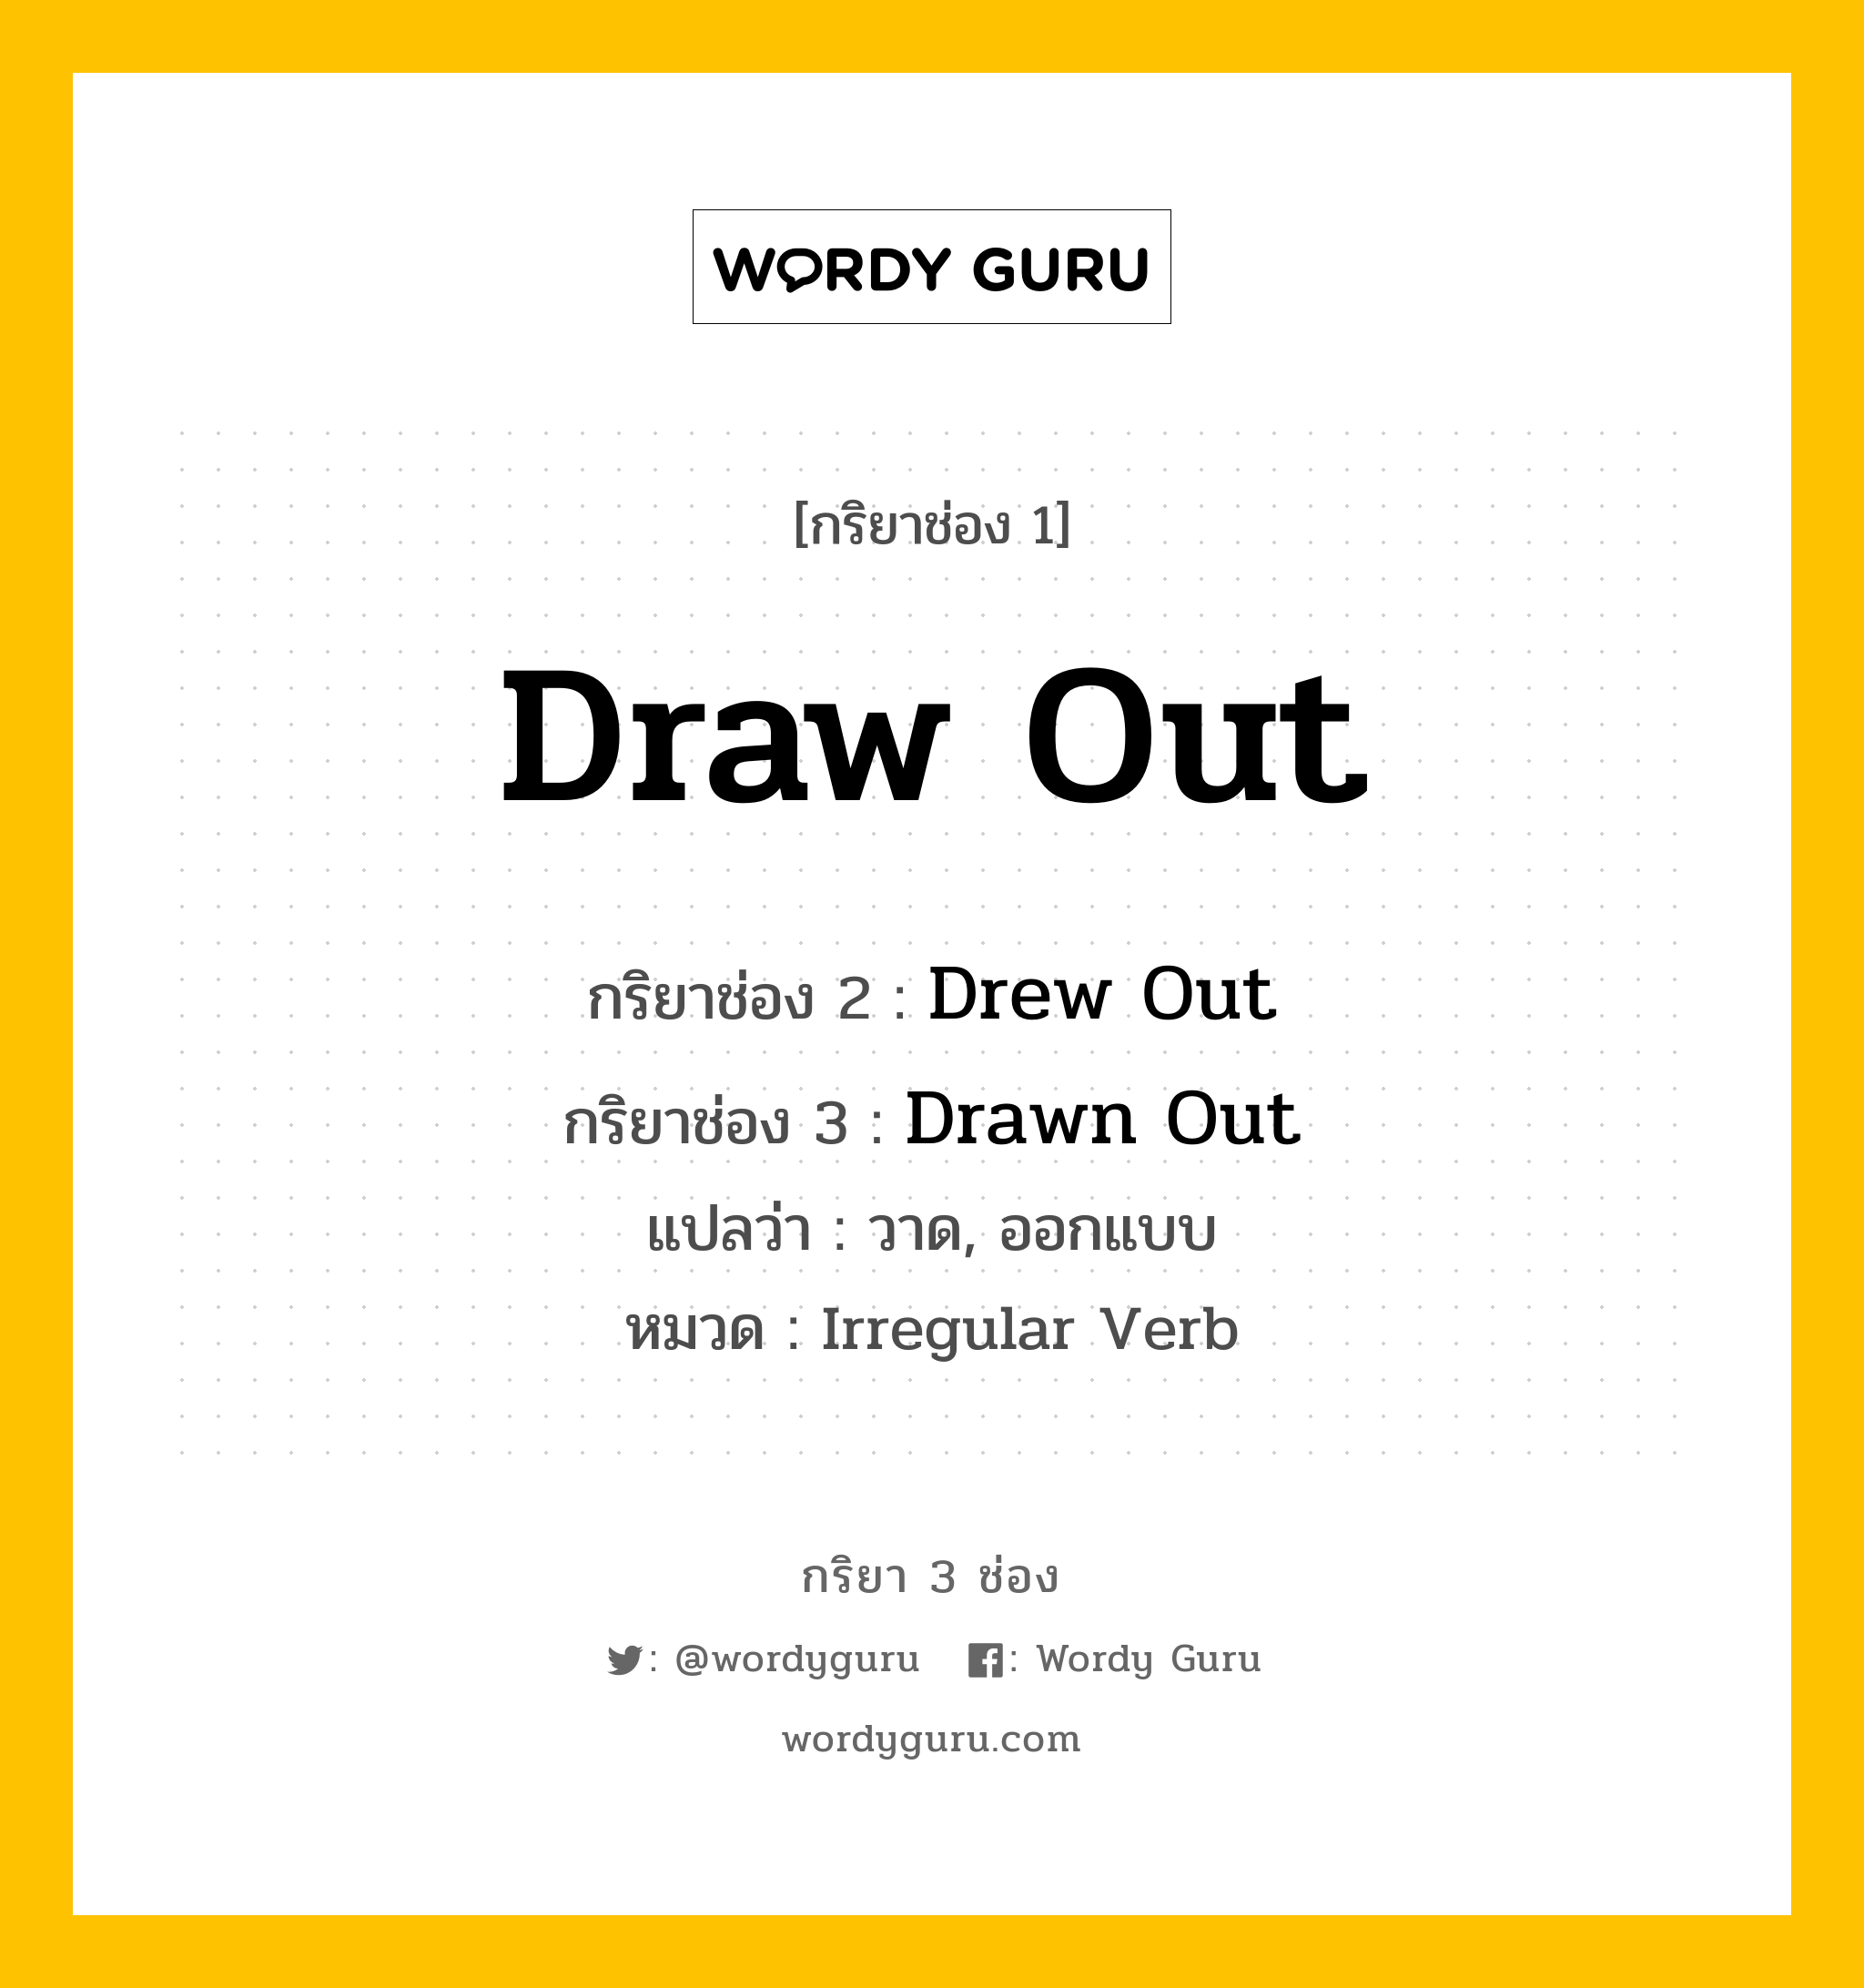 Draw Out มีกริยา 3 ช่องอะไรบ้าง? คำศัพท์ในกลุ่มประเภท Irregular Verb, กริยาช่อง 1 Draw Out กริยาช่อง 2 Drew Out กริยาช่อง 3 Drawn Out แปลว่า วาด, ออกแบบ หมวด Irregular Verb หมวด Irregular Verb